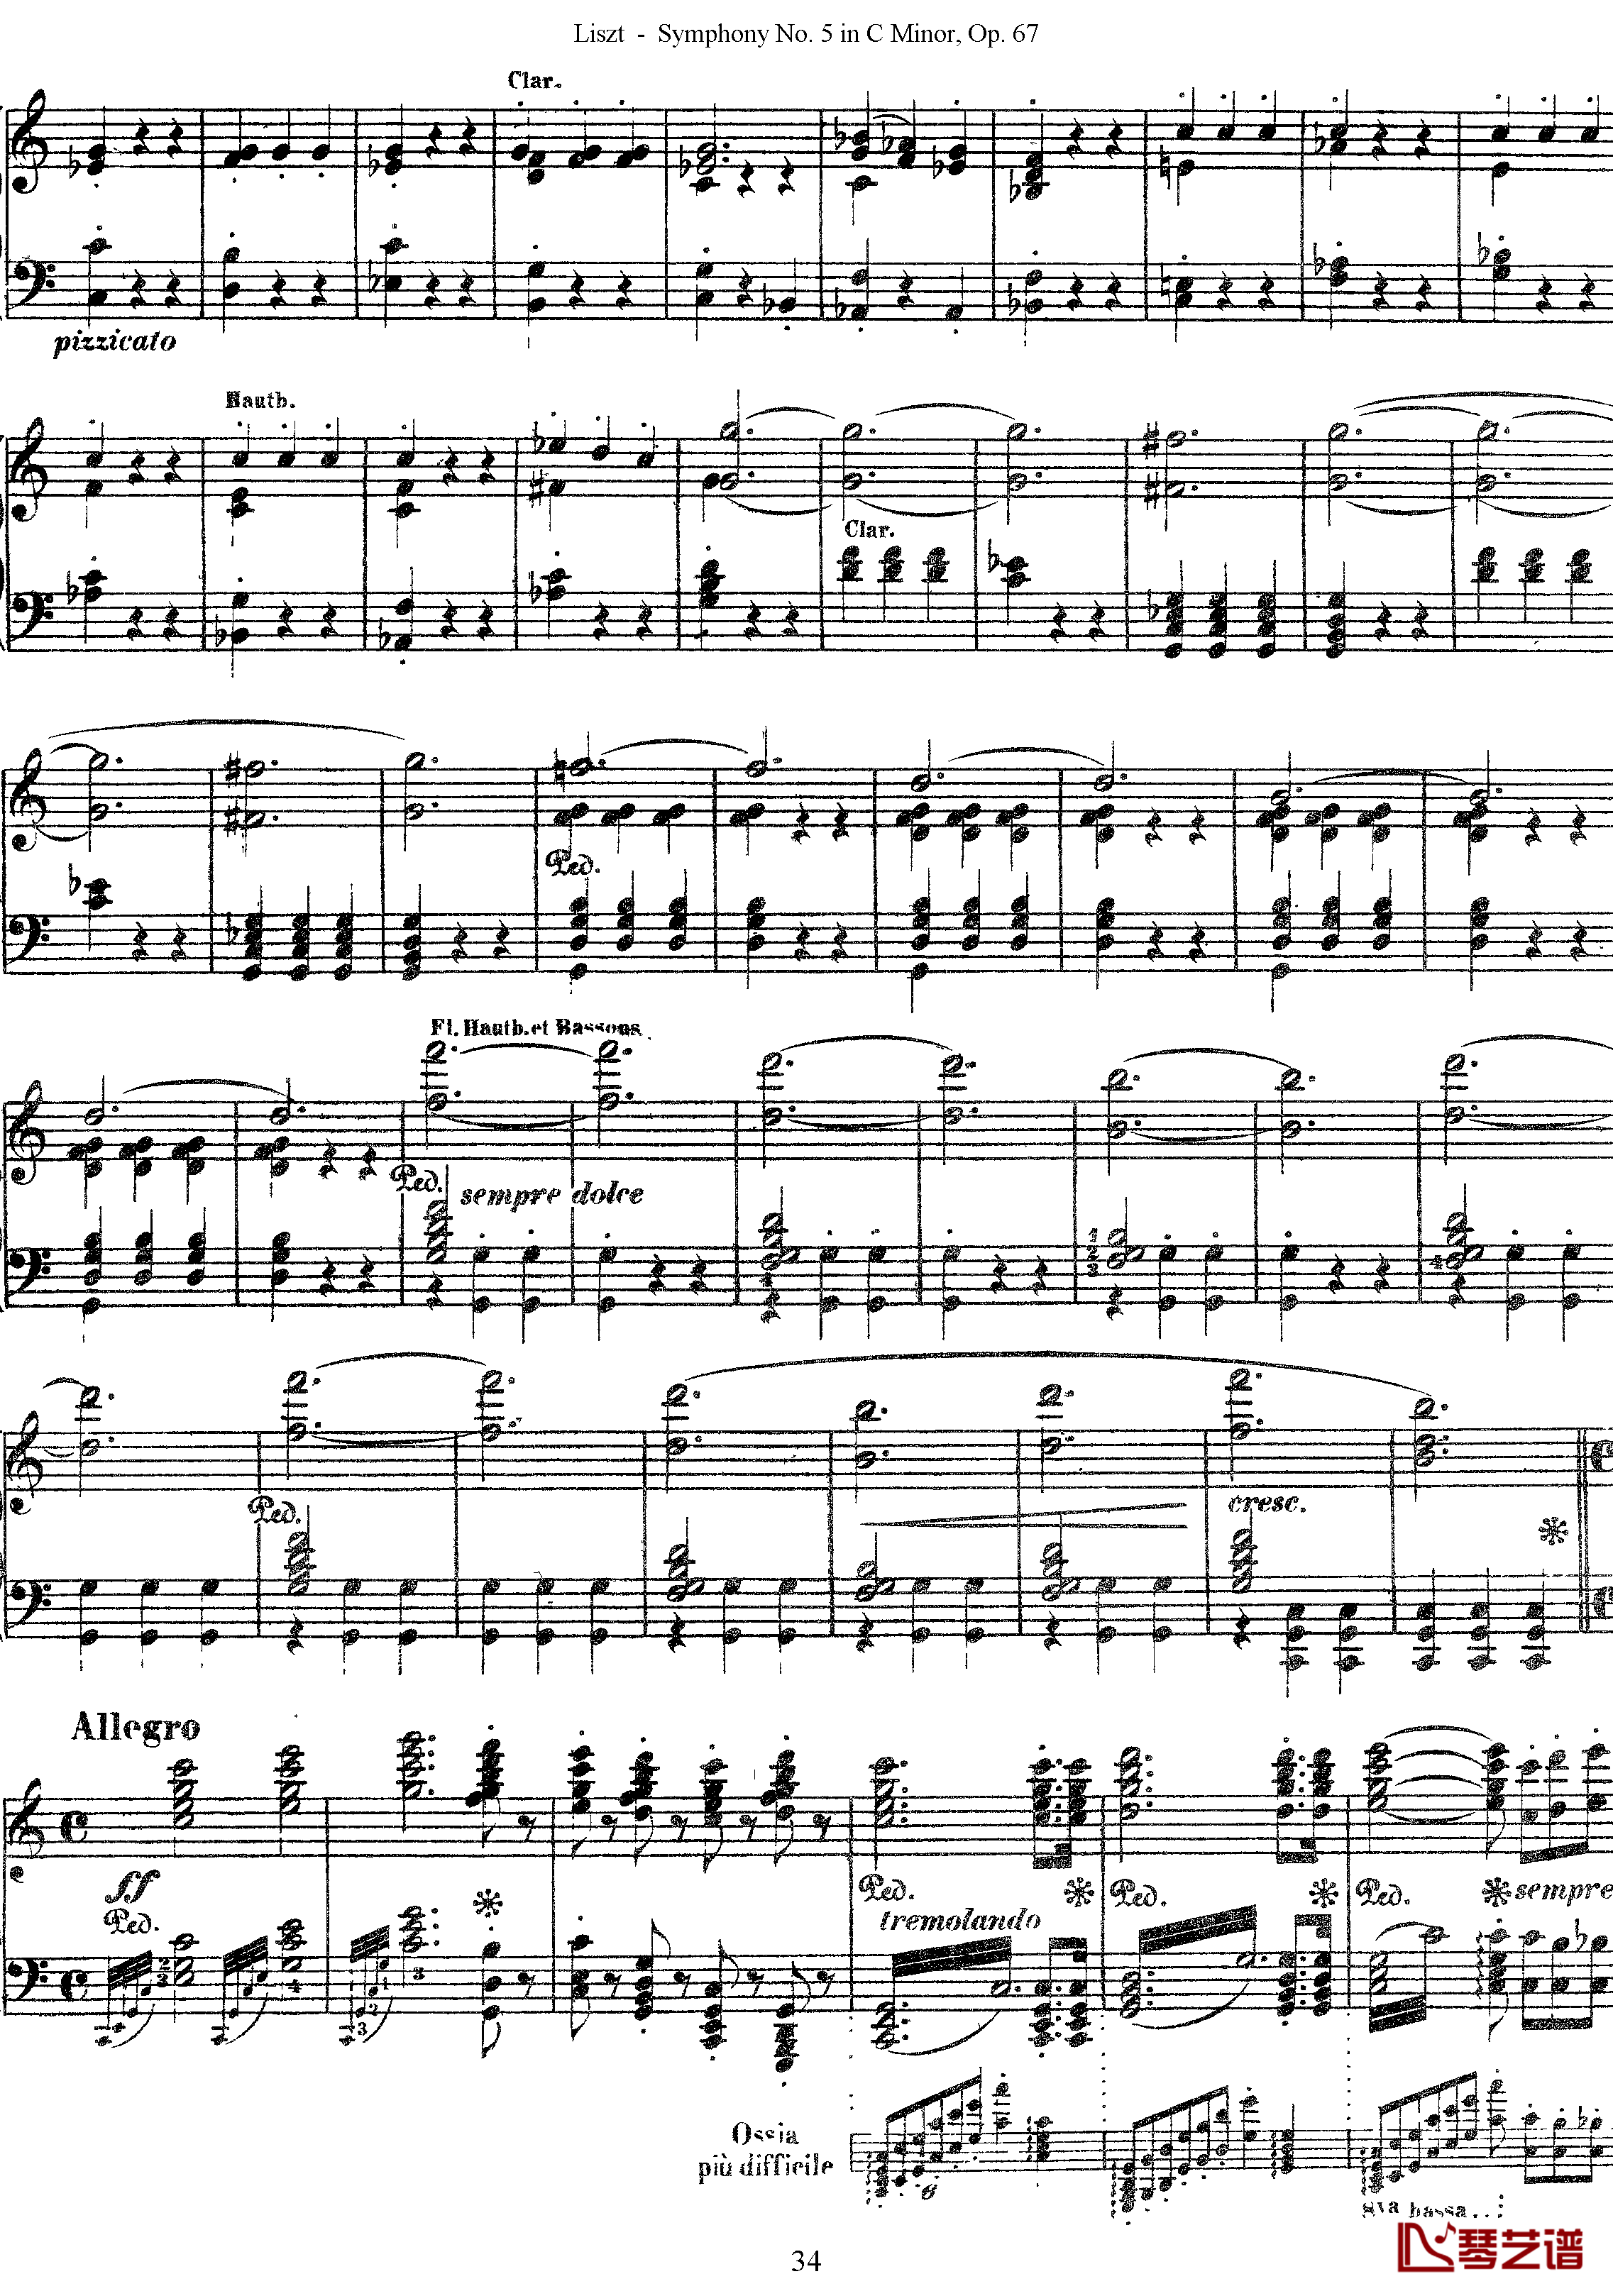 第五交响乐的钢琴曲钢琴谱-李斯特-李斯特改编自贝多芬34